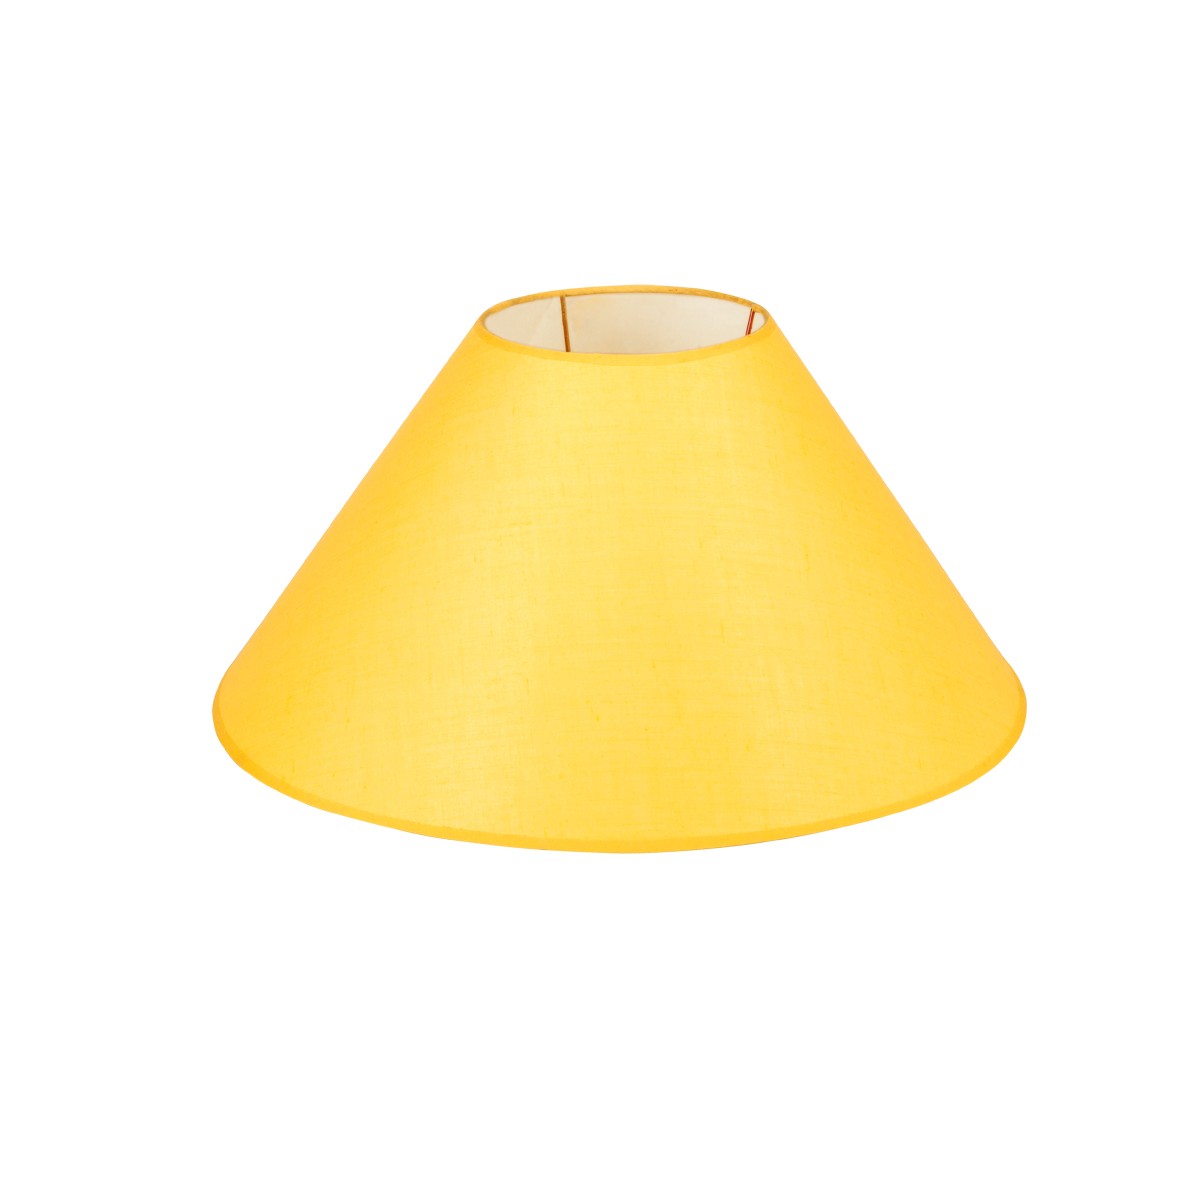 Καπέλο Μονόχρωμο Στρογγυλό Φ45cm Κάτω Πλευρά -Σε Κίτρινο Χρώμα        VK/E27/E14/D45/Y